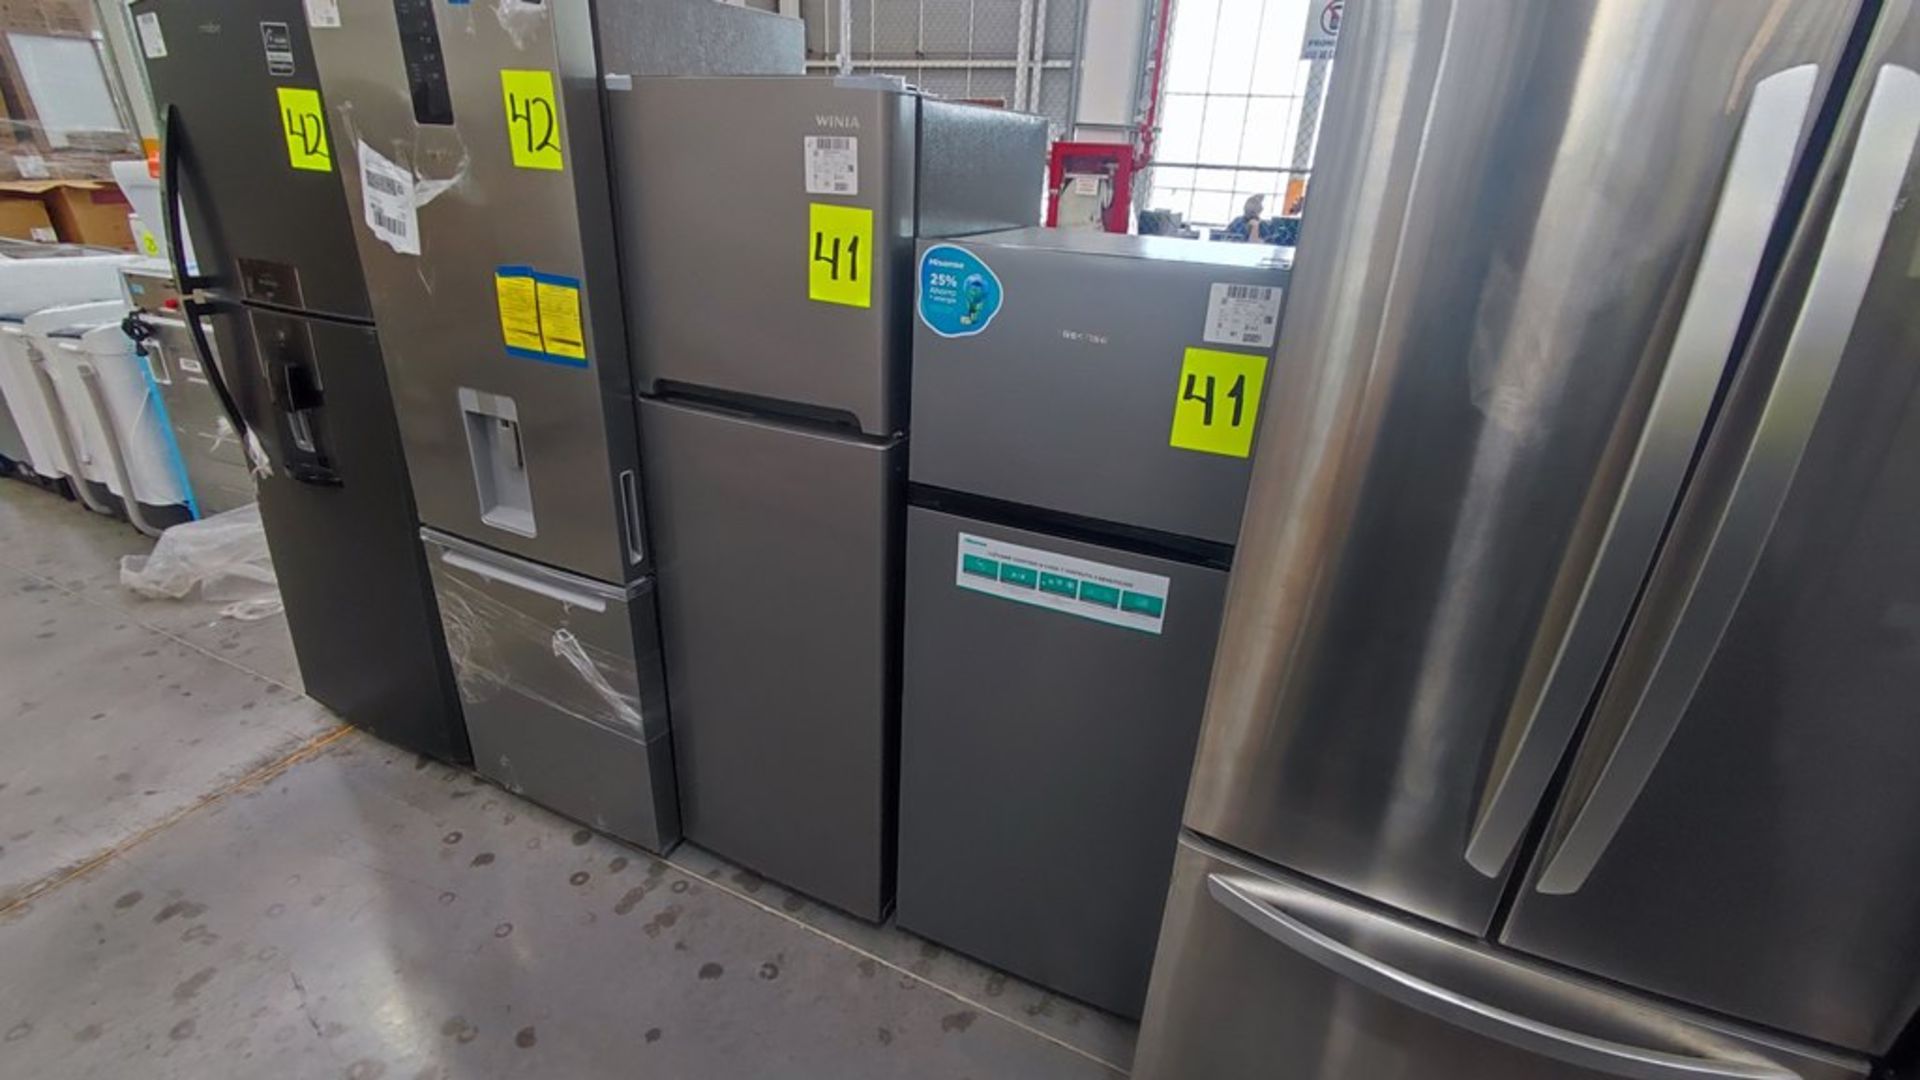 Lote de 2 Refrigeradores contiene: 1 Refrigerador Marca Hisense Modelo BCYNY, No de serie 1B0205Z00 - Image 7 of 11